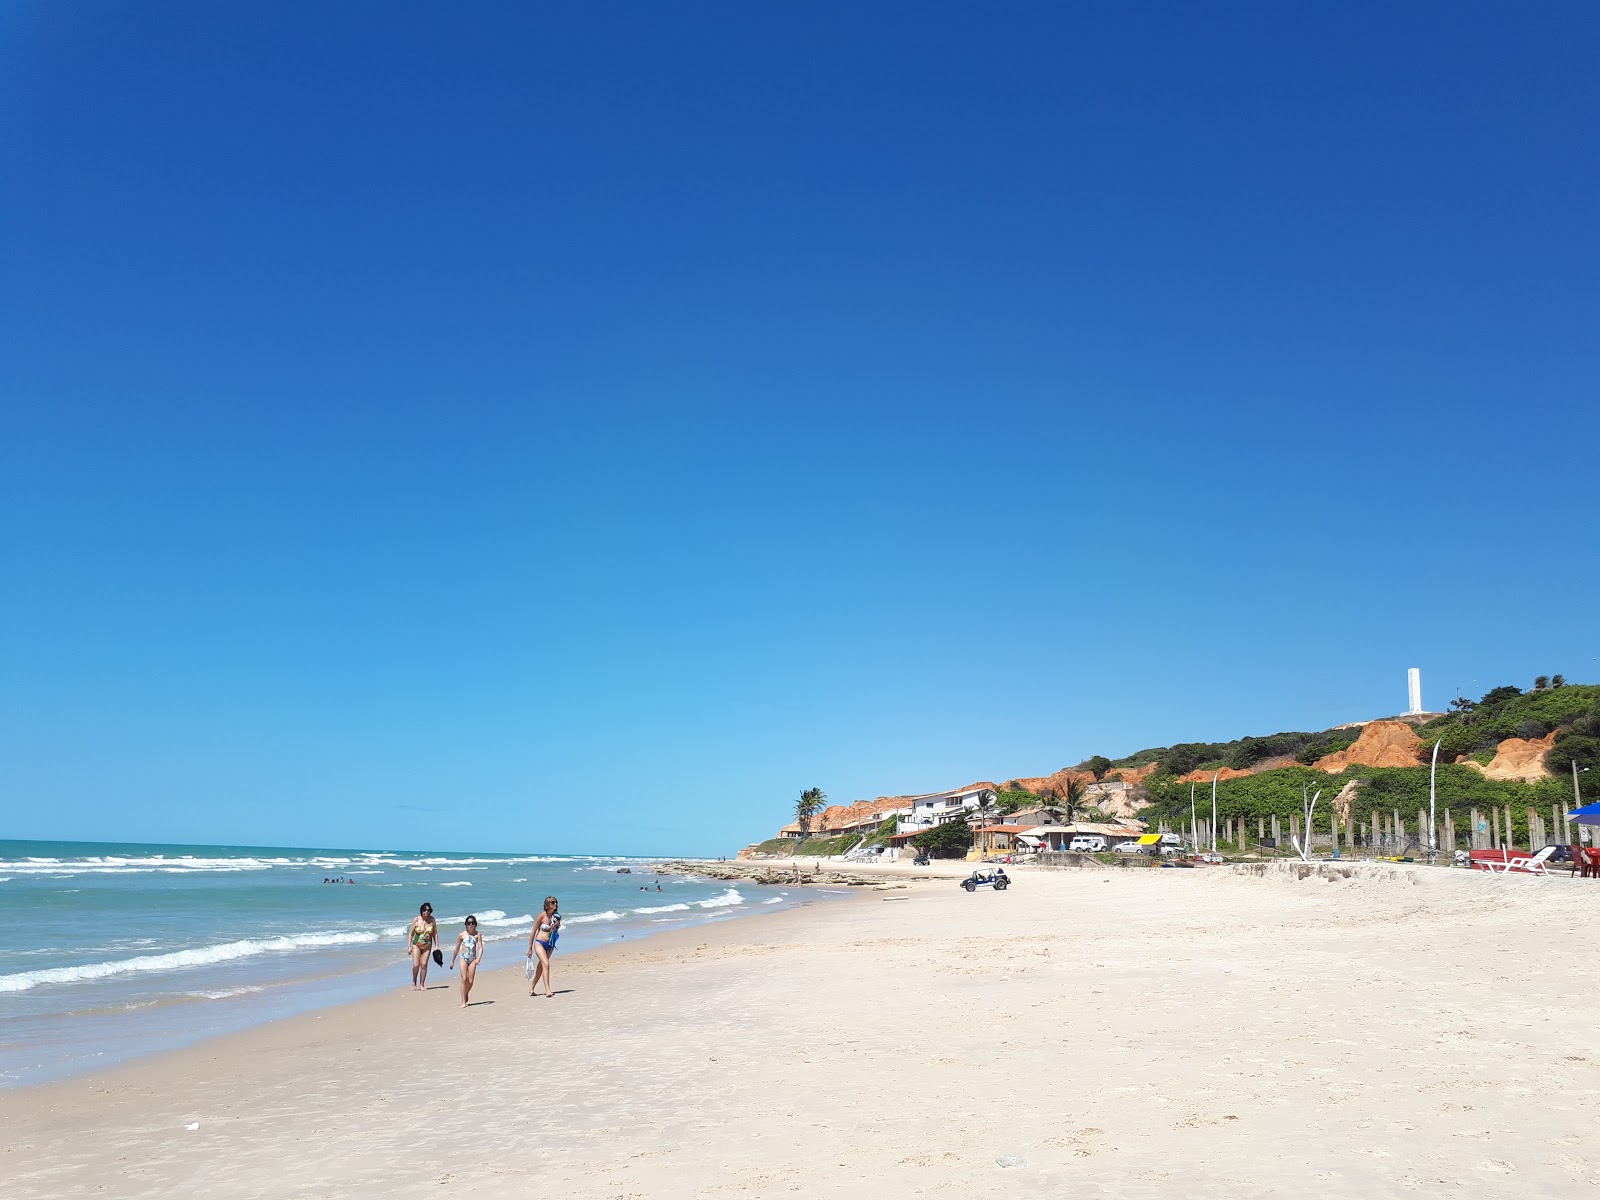 Morro Branco Plajı'in fotoğrafı parlak kum yüzey ile